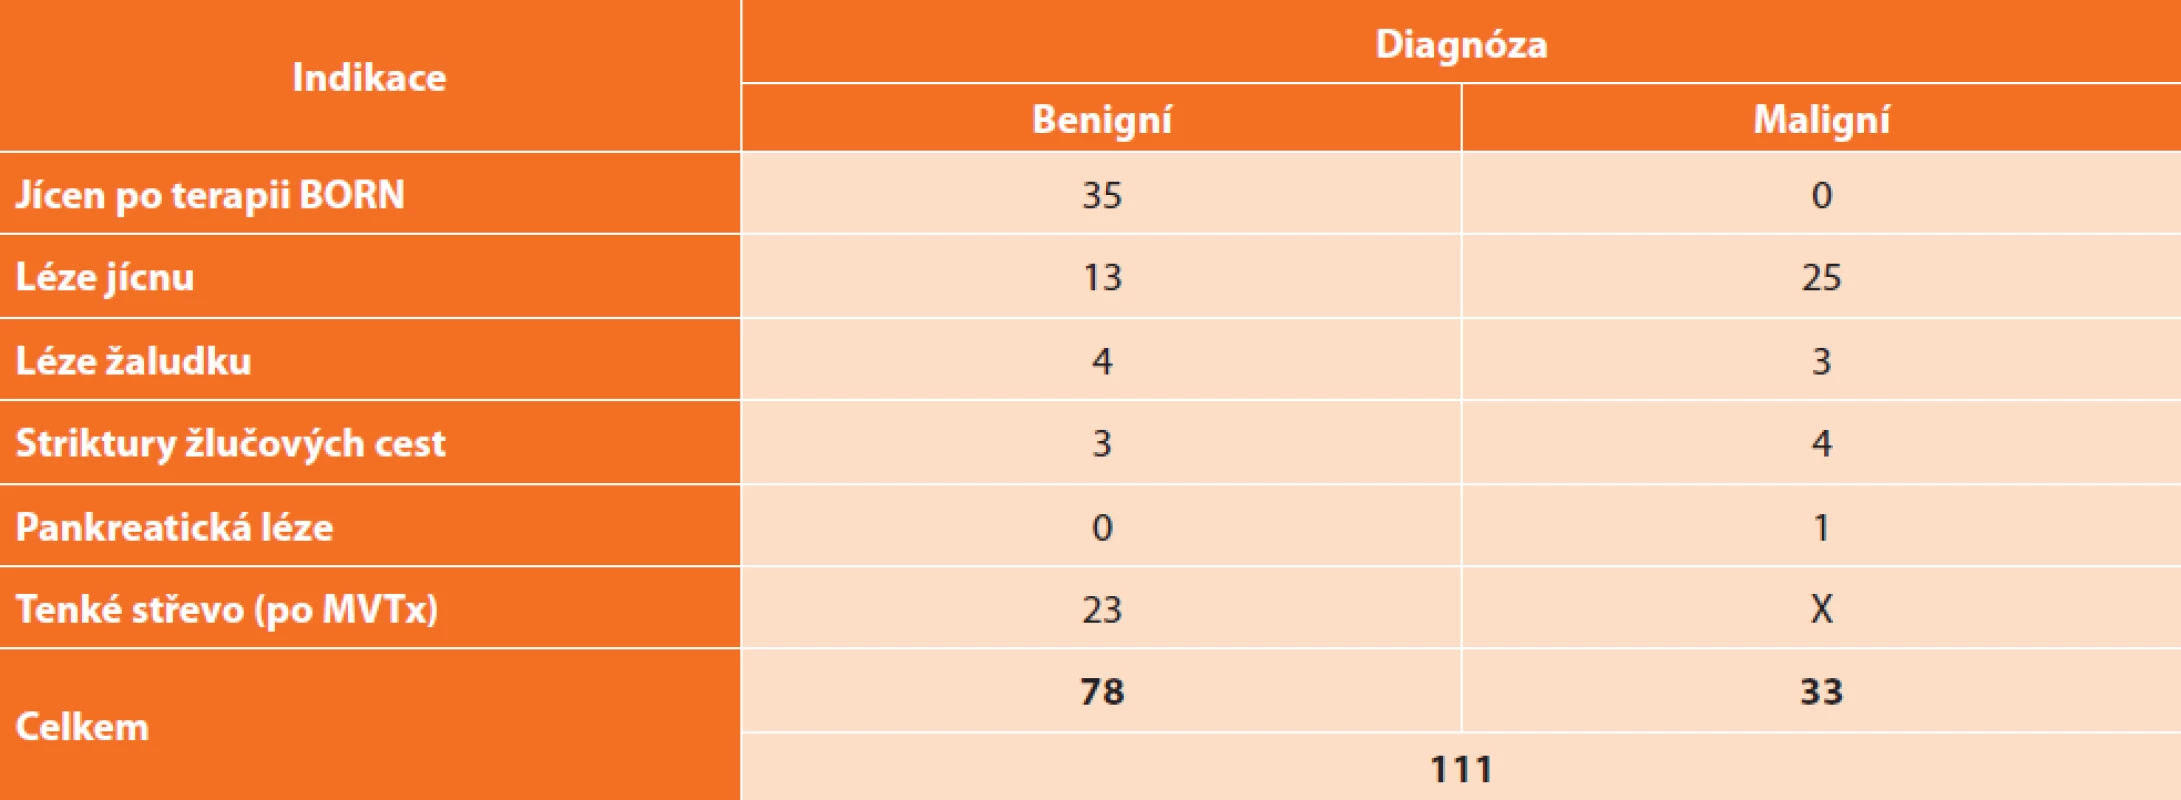 Přehled počtu vyšetření CLE v IKEM (současný stav)<br>
Tab: 3: Total number of CLE examinations in IKEM (current status)